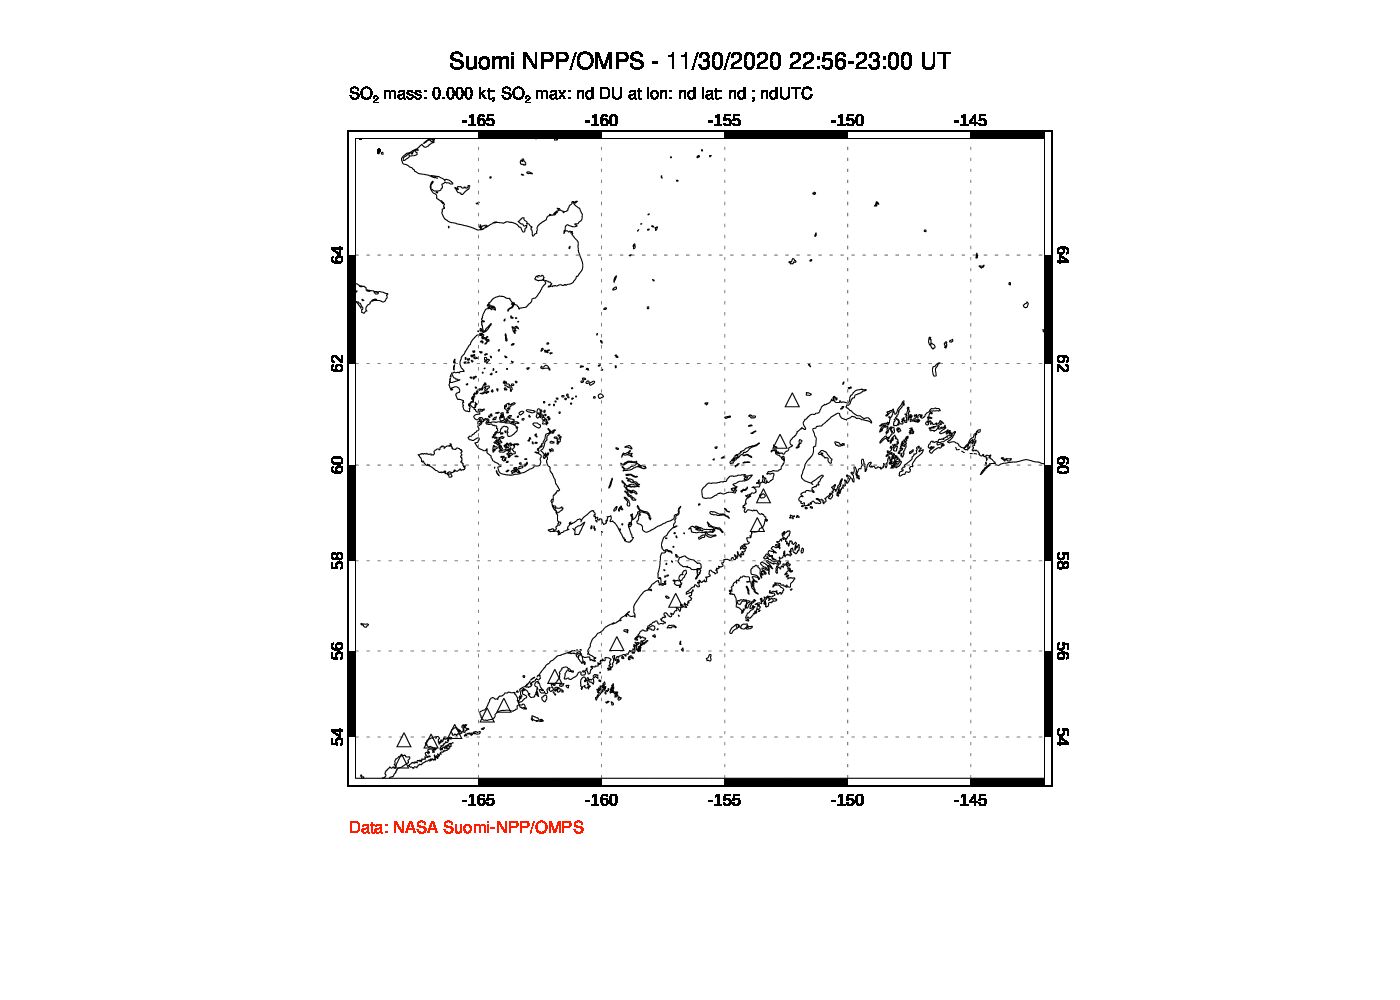 A sulfur dioxide image over Alaska, USA on Nov 30, 2020.